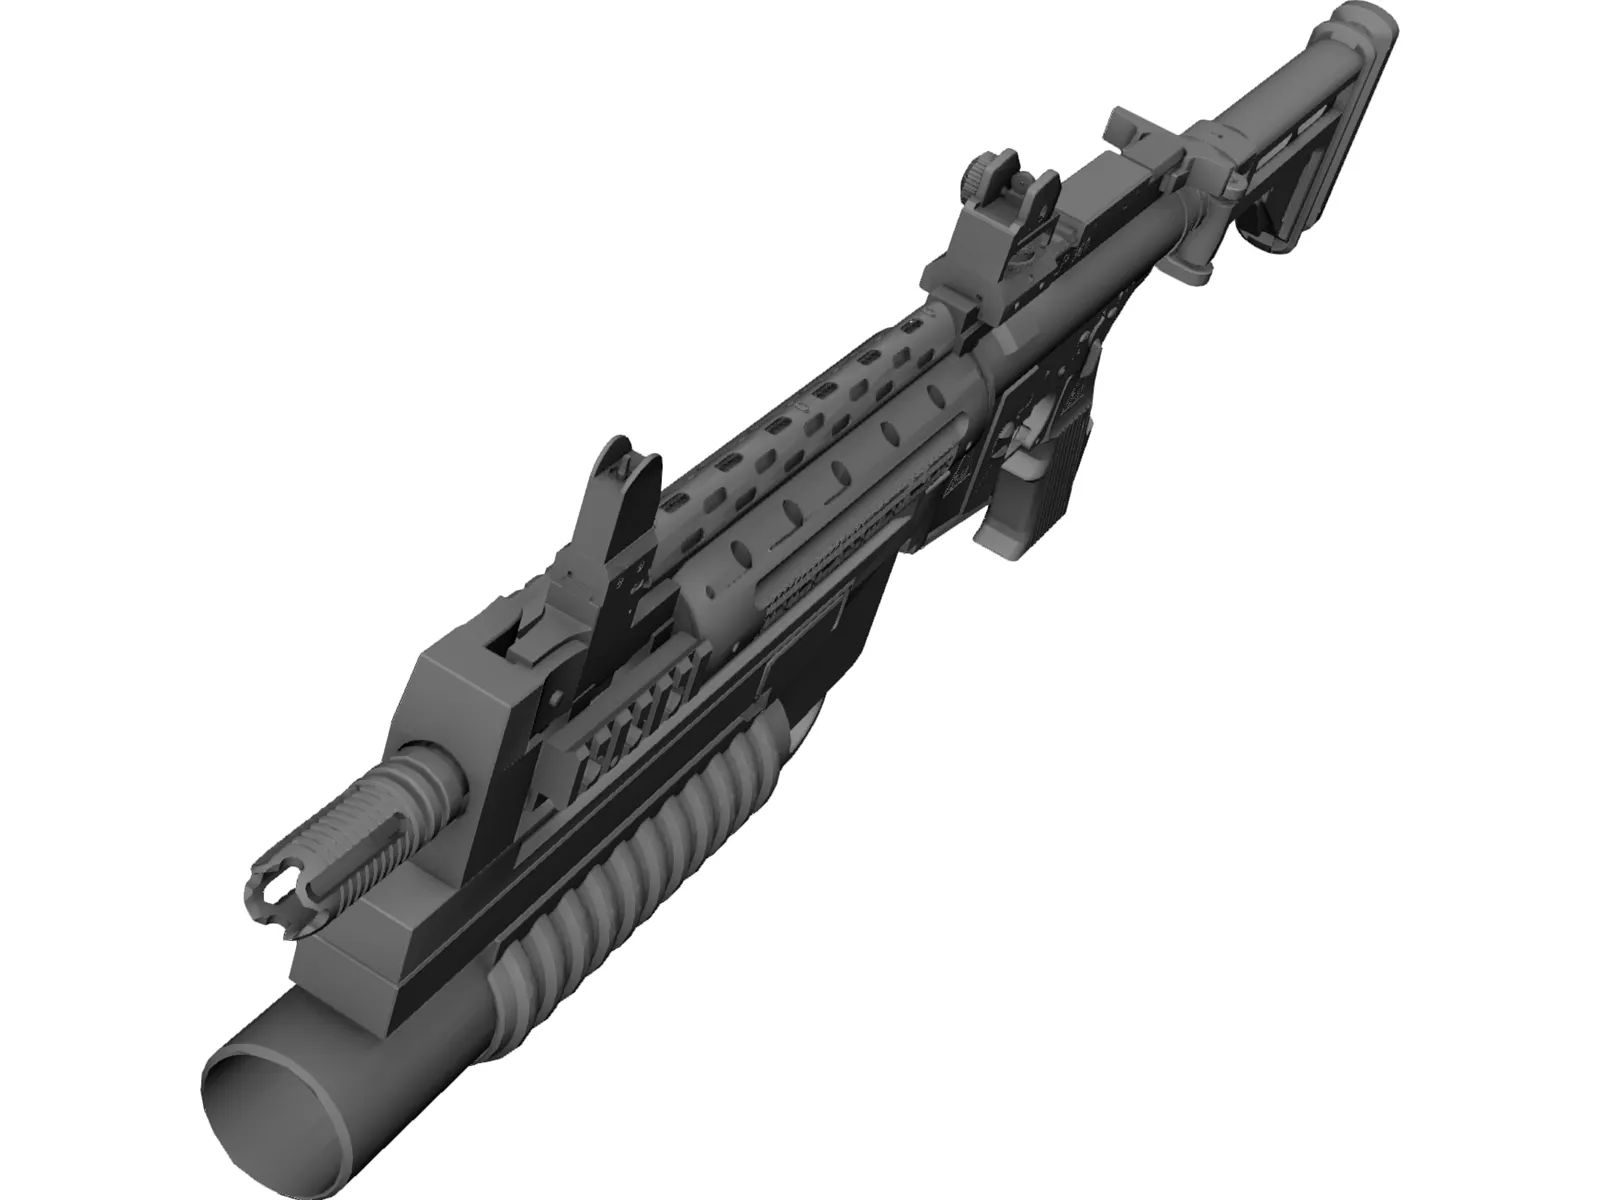 Lr3000 Assault Rifle  3D Model